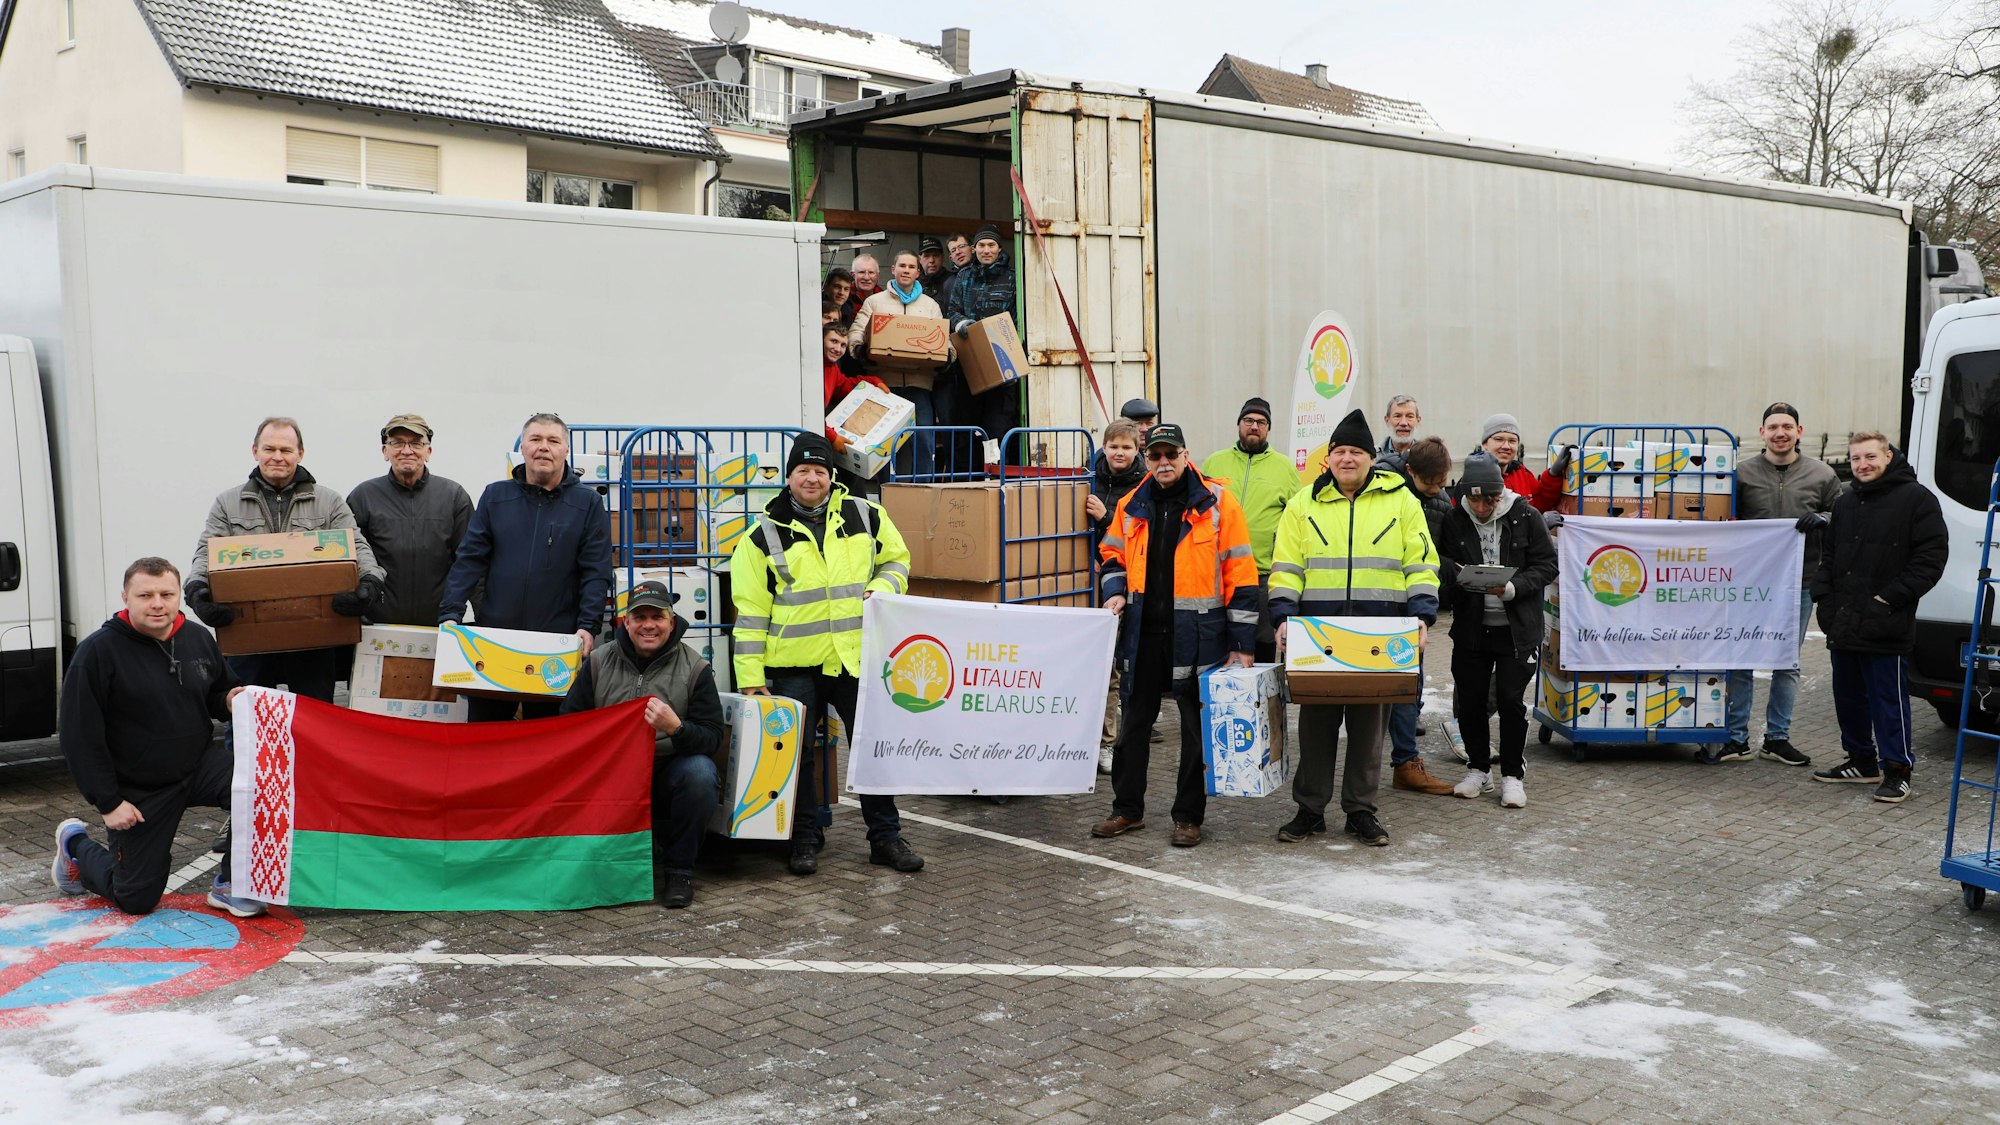 Helfer stehen mit der Fahne von Belarus und des Vereins Hilfe Litauen Belarus vor einem Lkw, der beladen wird.